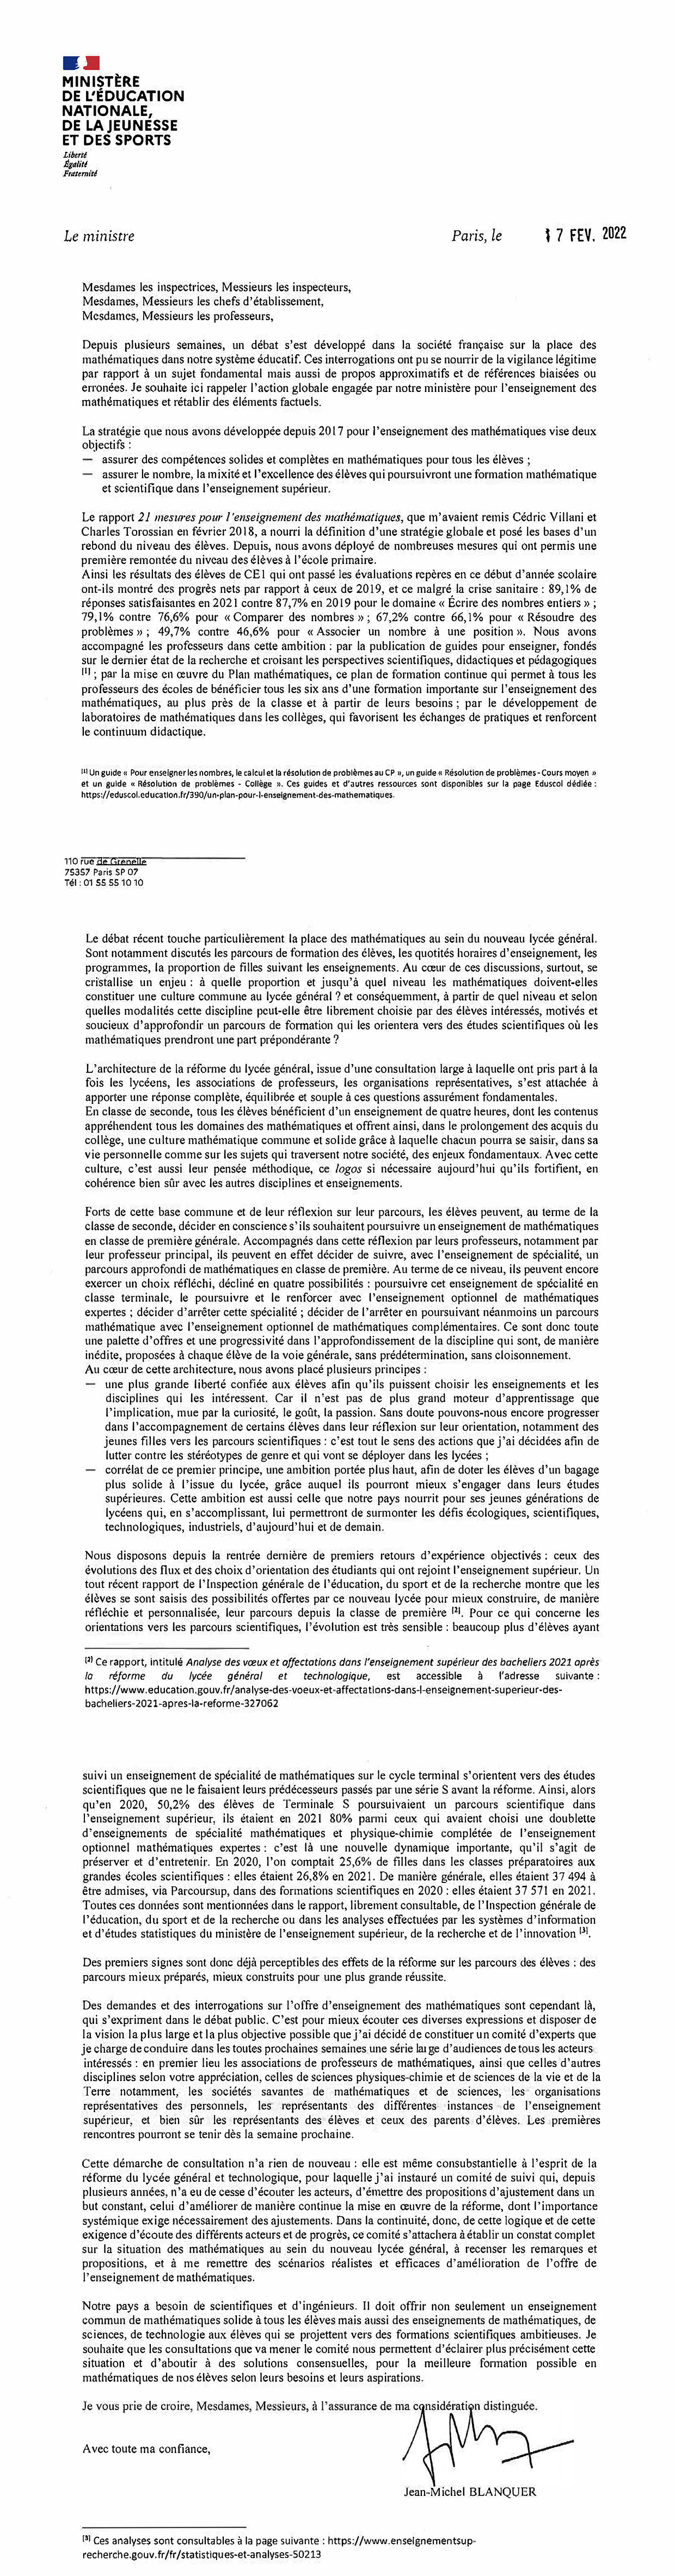 Lancement des travaux du comité de consultation sur l’enseignement des mathématiques au lycée général - lettre de Jean-Michel Blanquer